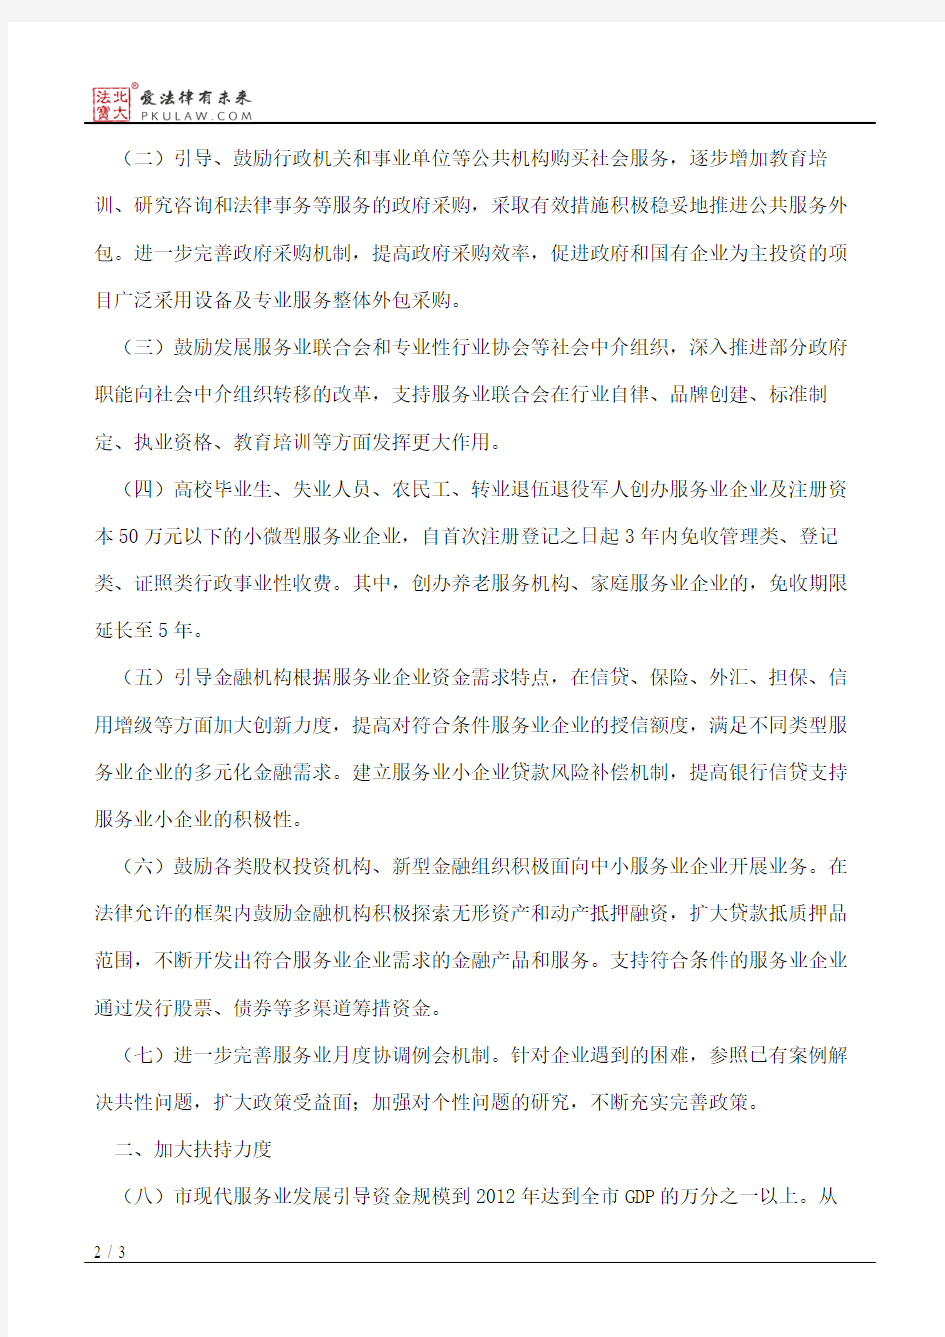 杭州市人民政府关于进一步加快发展服务业的实施意见